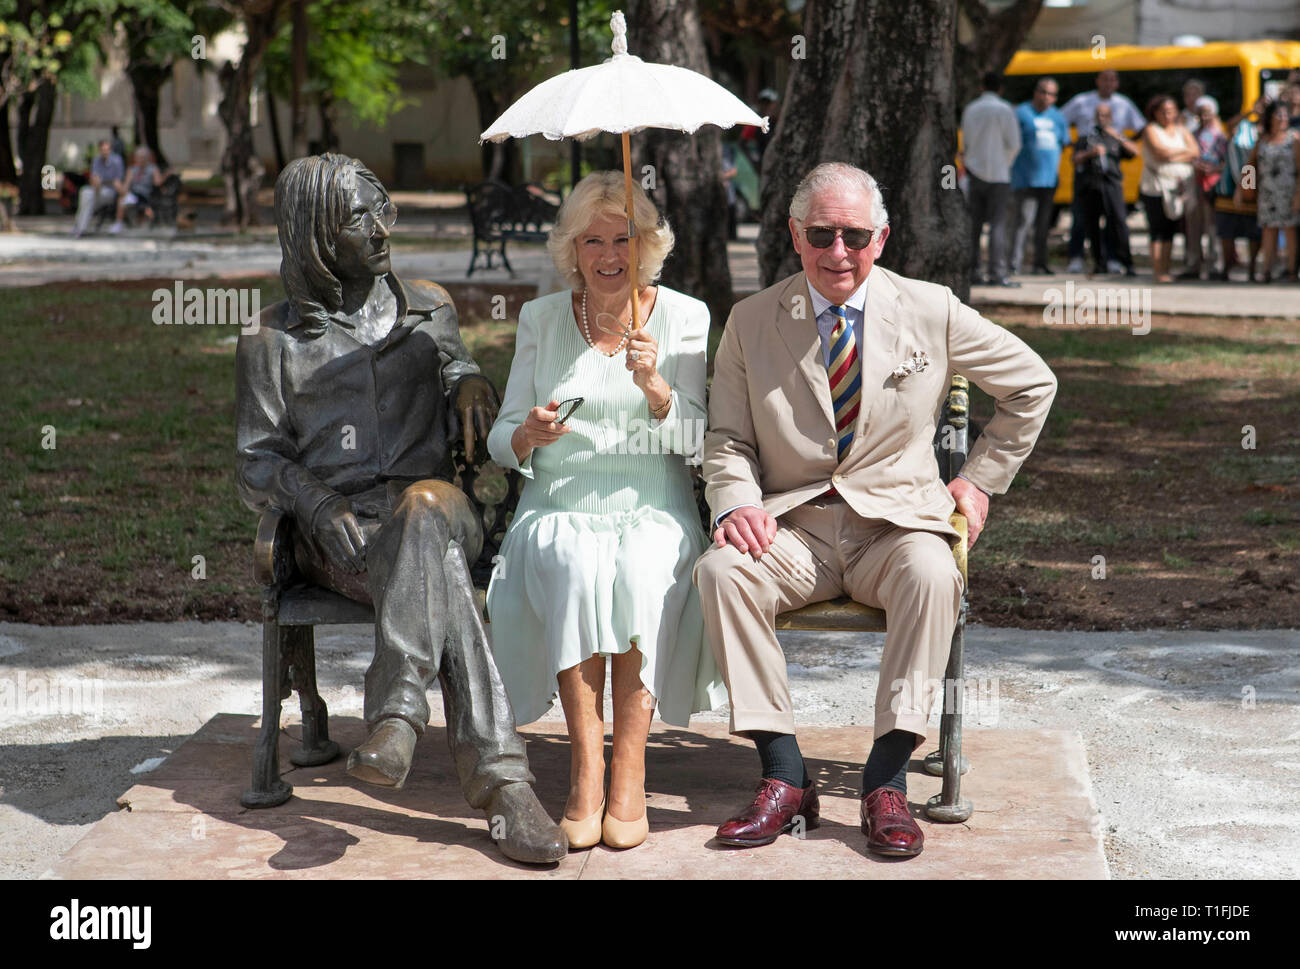 Il Principe di Galles e la duchessa di Cornovaglia sedersi sul John Lennon memorial banco in John Lennon Square a l'Avana, Cuba, come parte di un viaggio storico che celebra i legami culturali tra il Regno Unito e la stato comunista. Foto Stock